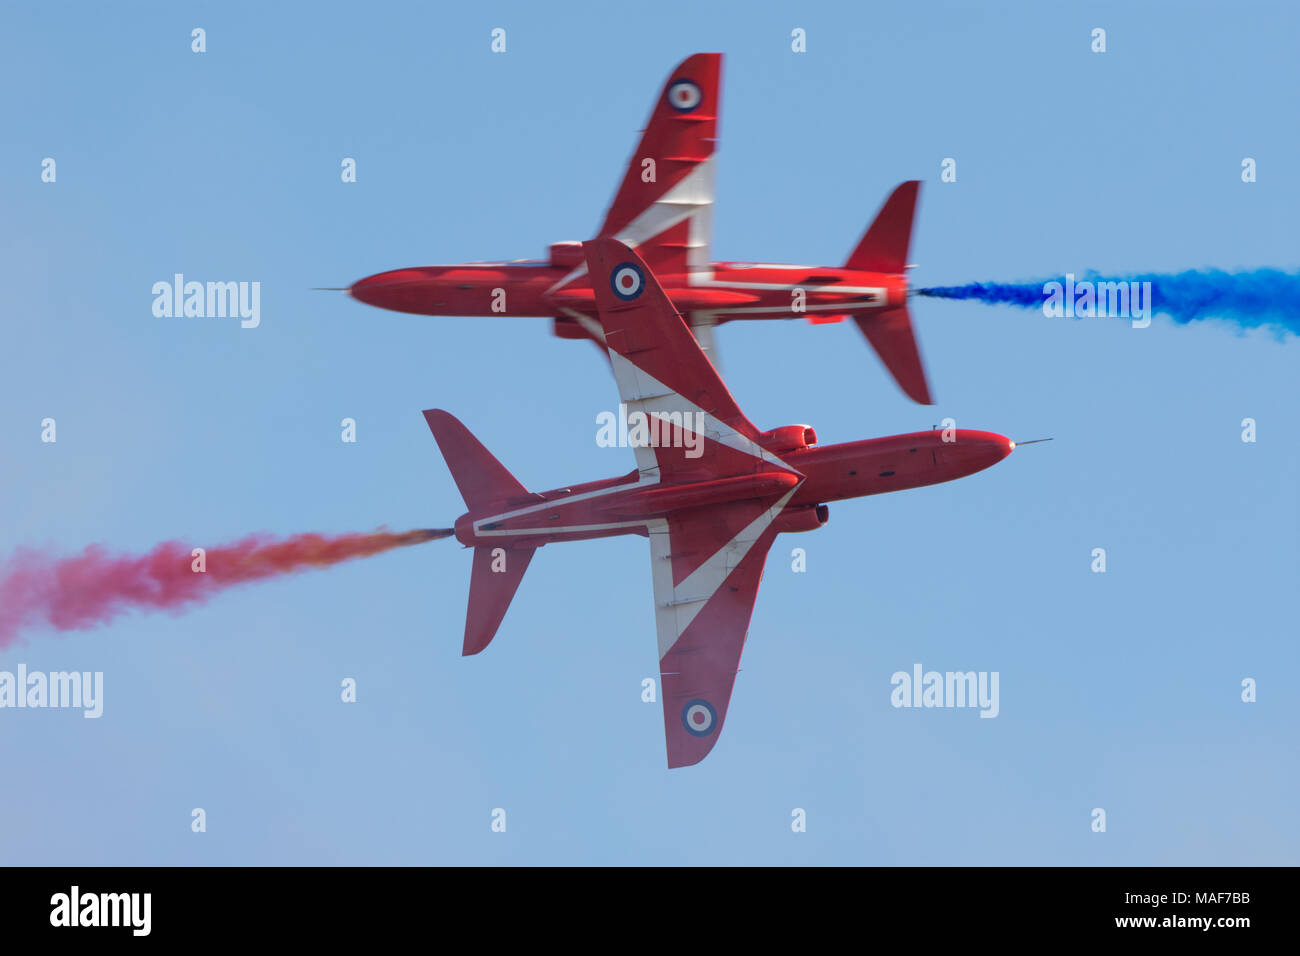 Avions Red Arrows de la RAF se croisant à proximité Banque D'Images